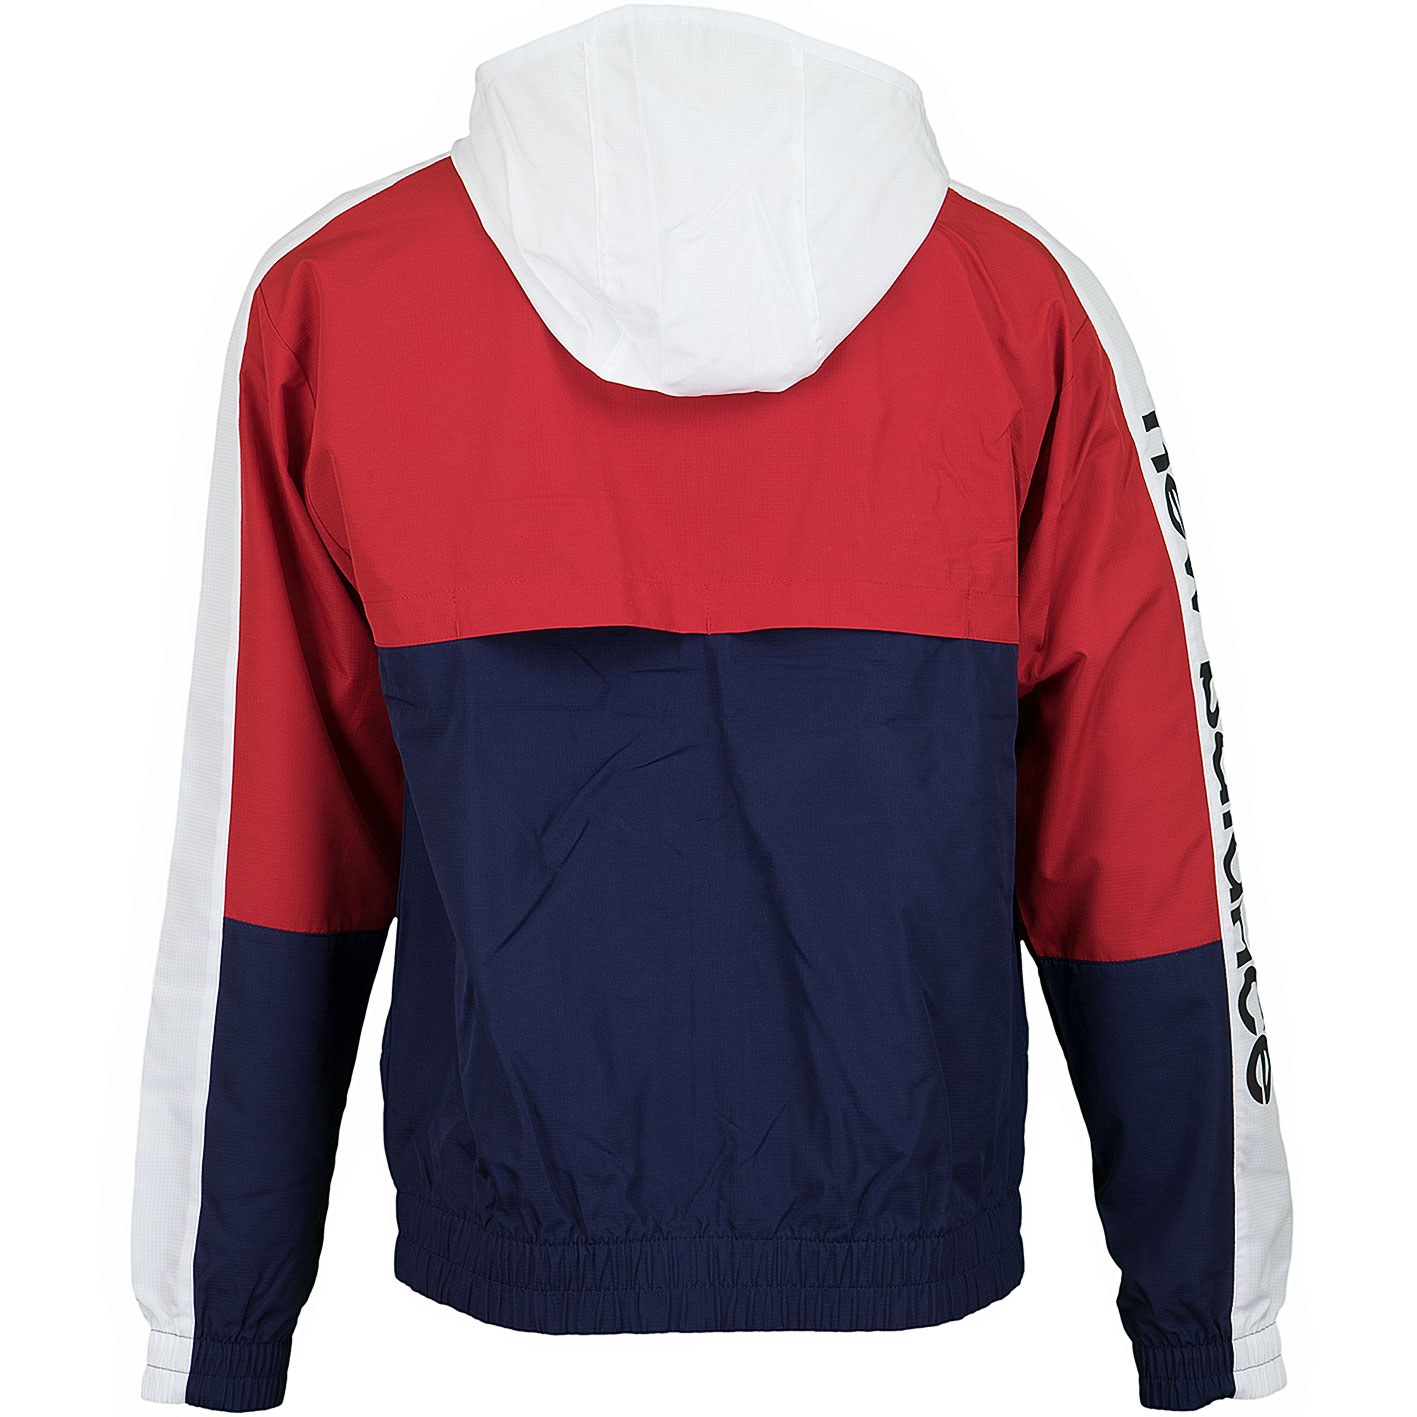 ☆ New Balance Jacke Athletics rot/dunkelblau/weiß - hier bestellen!